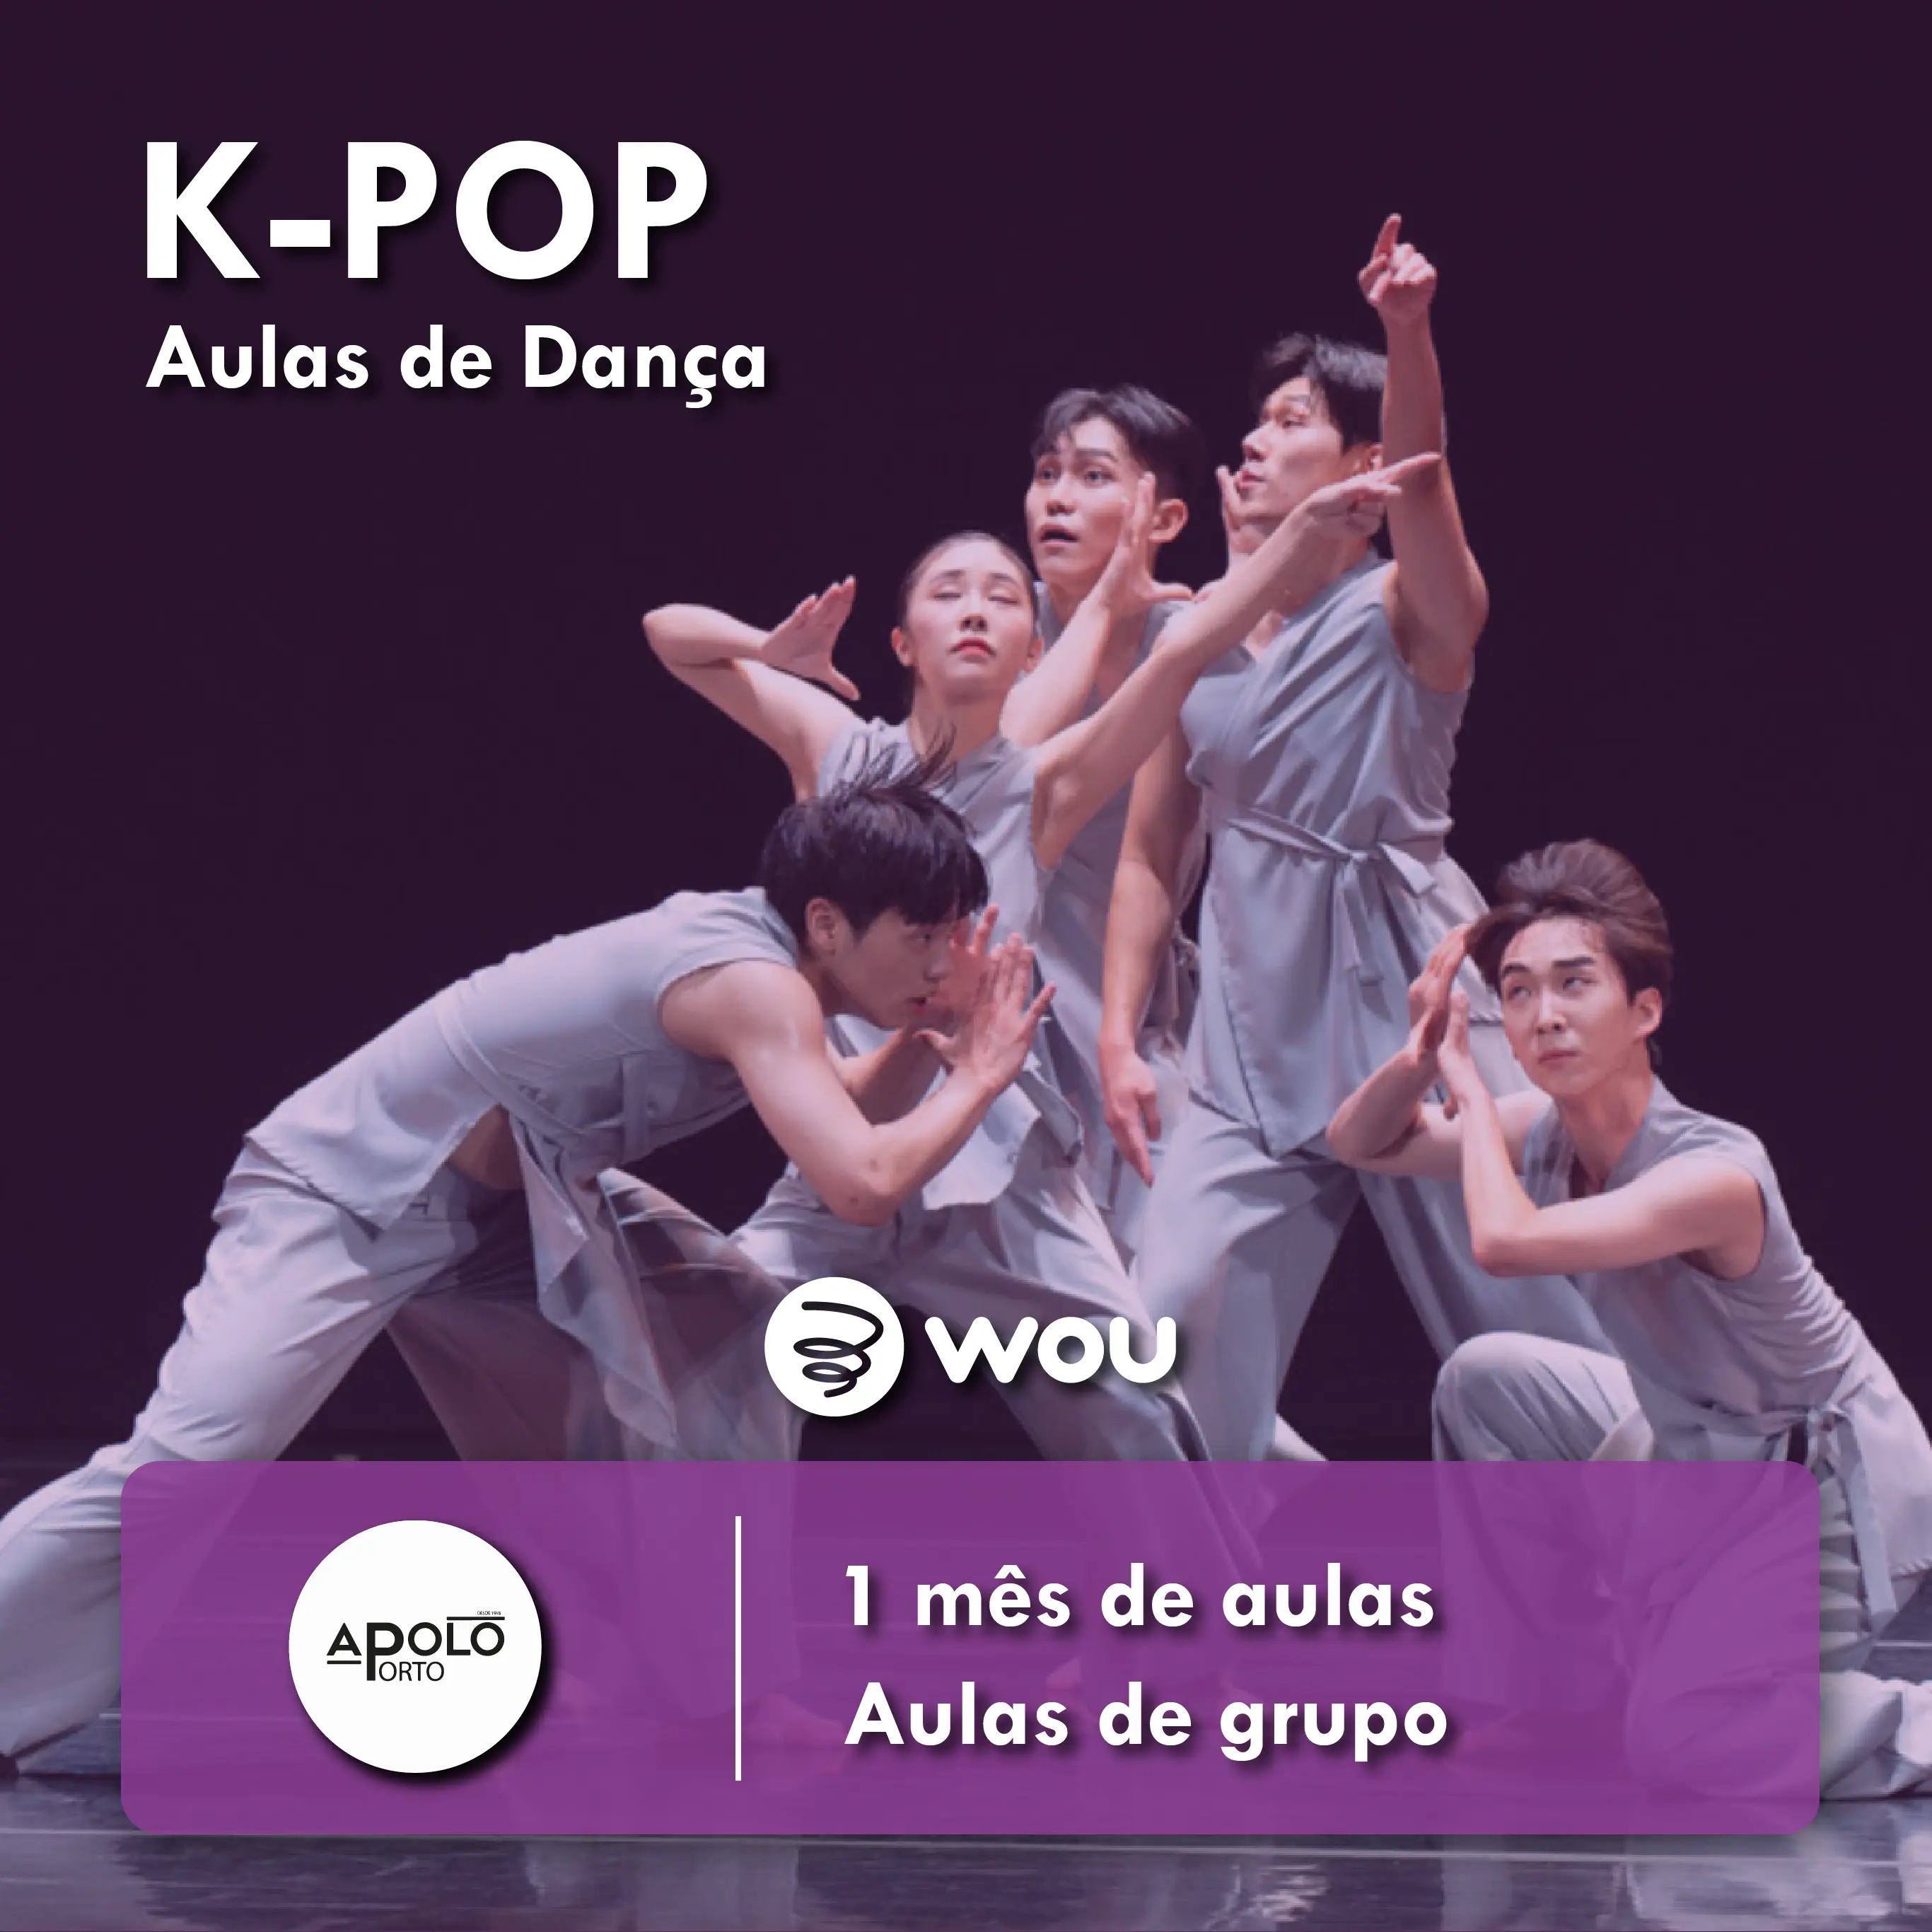 K-Pop classes in Porto